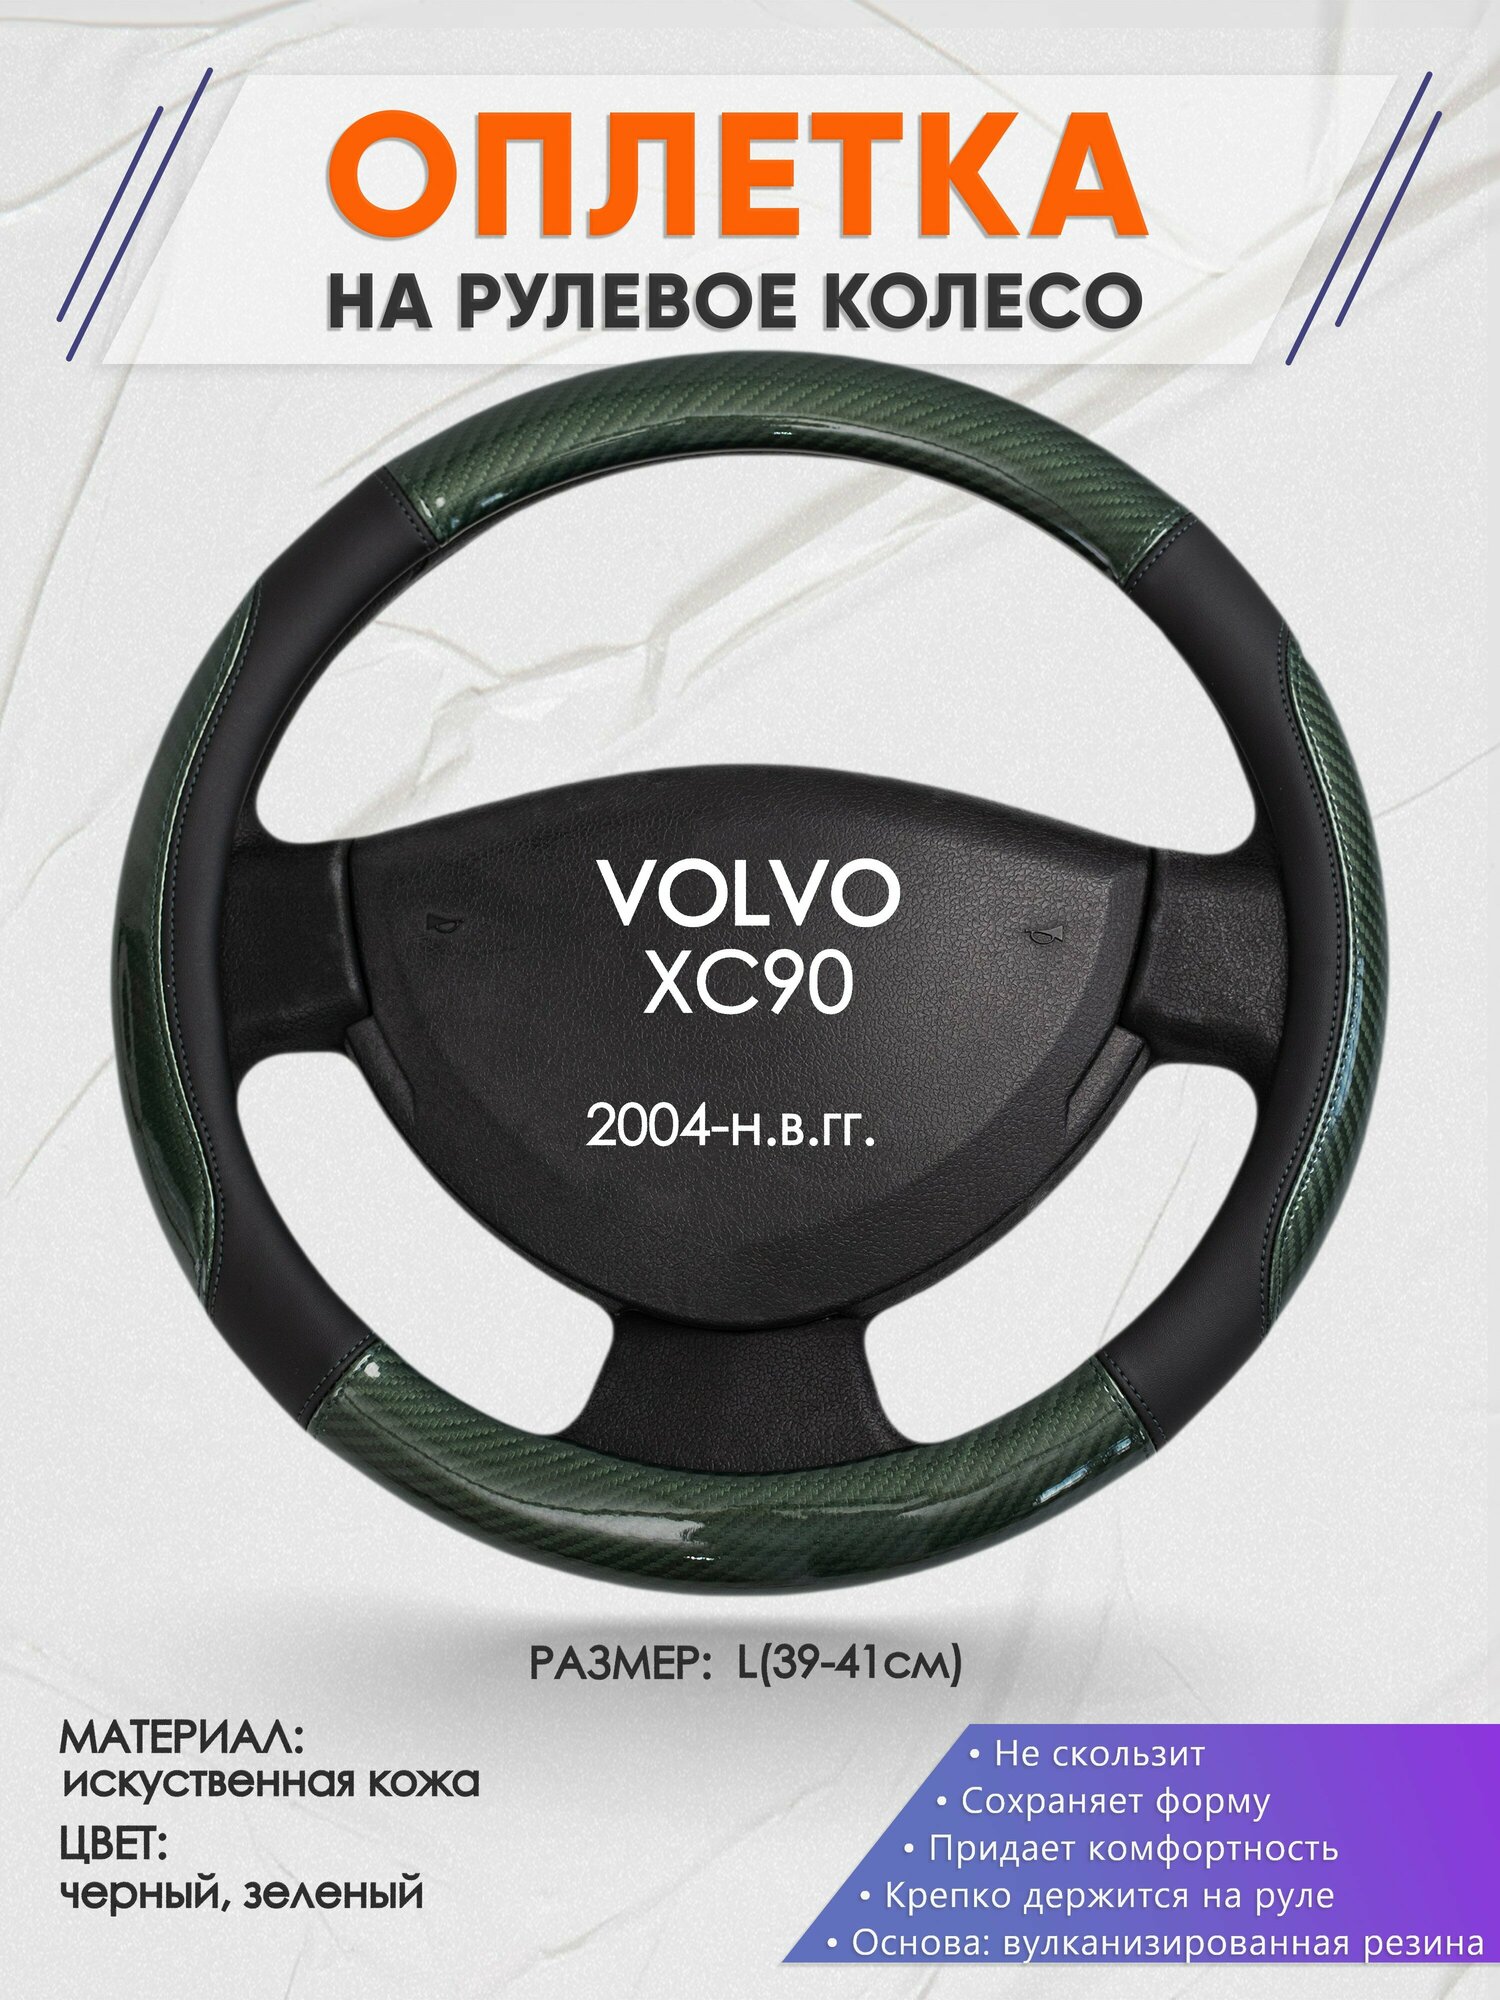 Оплетка на руль для VOLVO XC90(Вольво иксс90) 2004-н.в., L(39-41см), Искусственная кожа 19